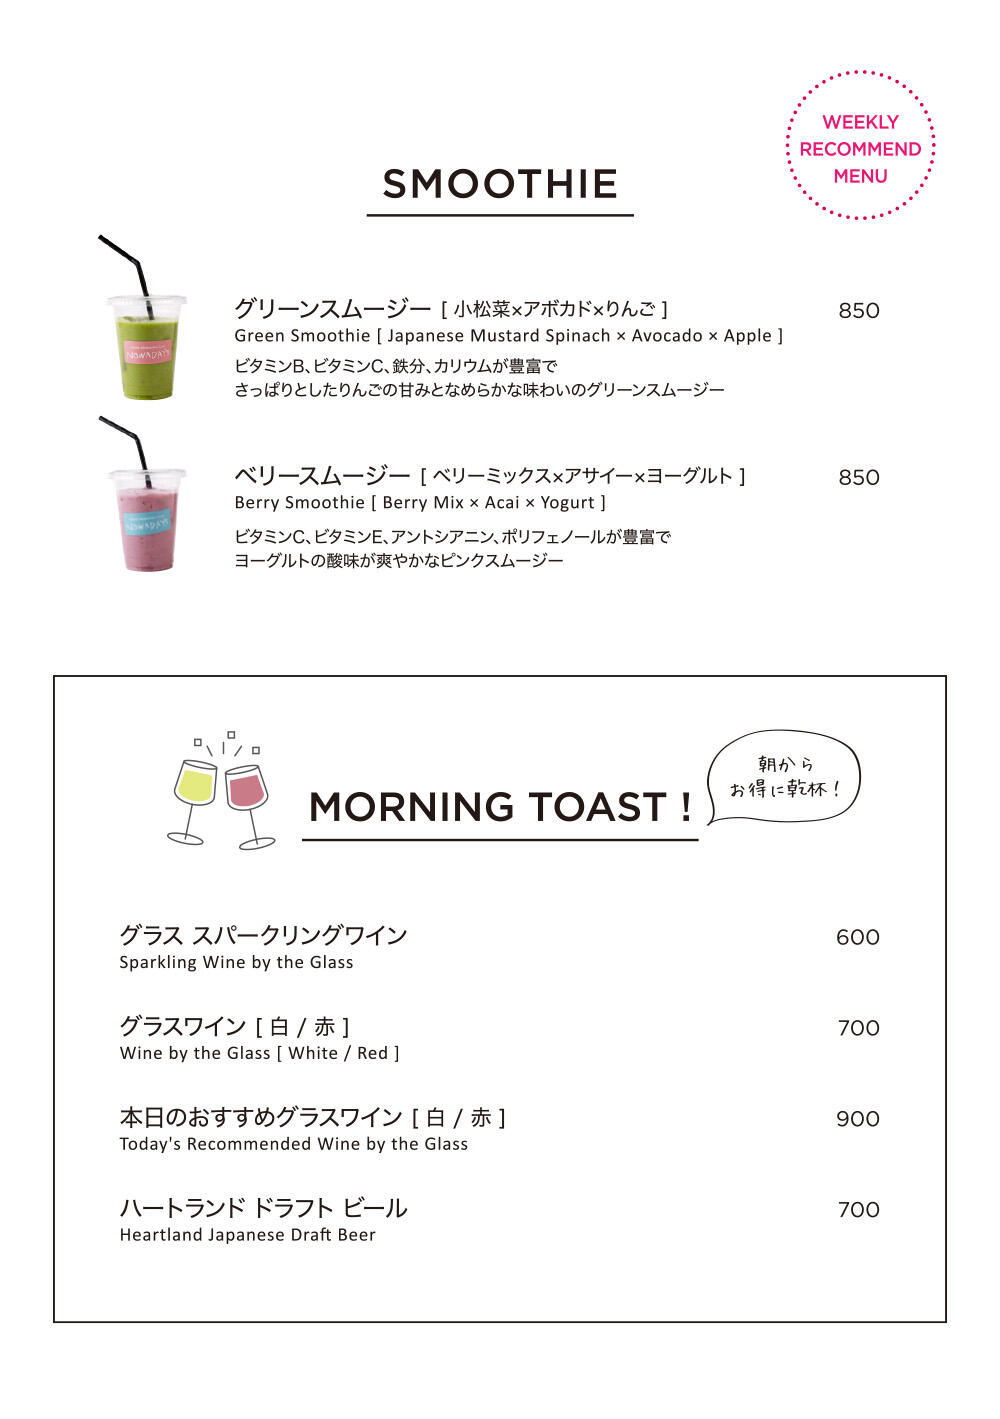 gmcd_2403_morning_toast.jpg